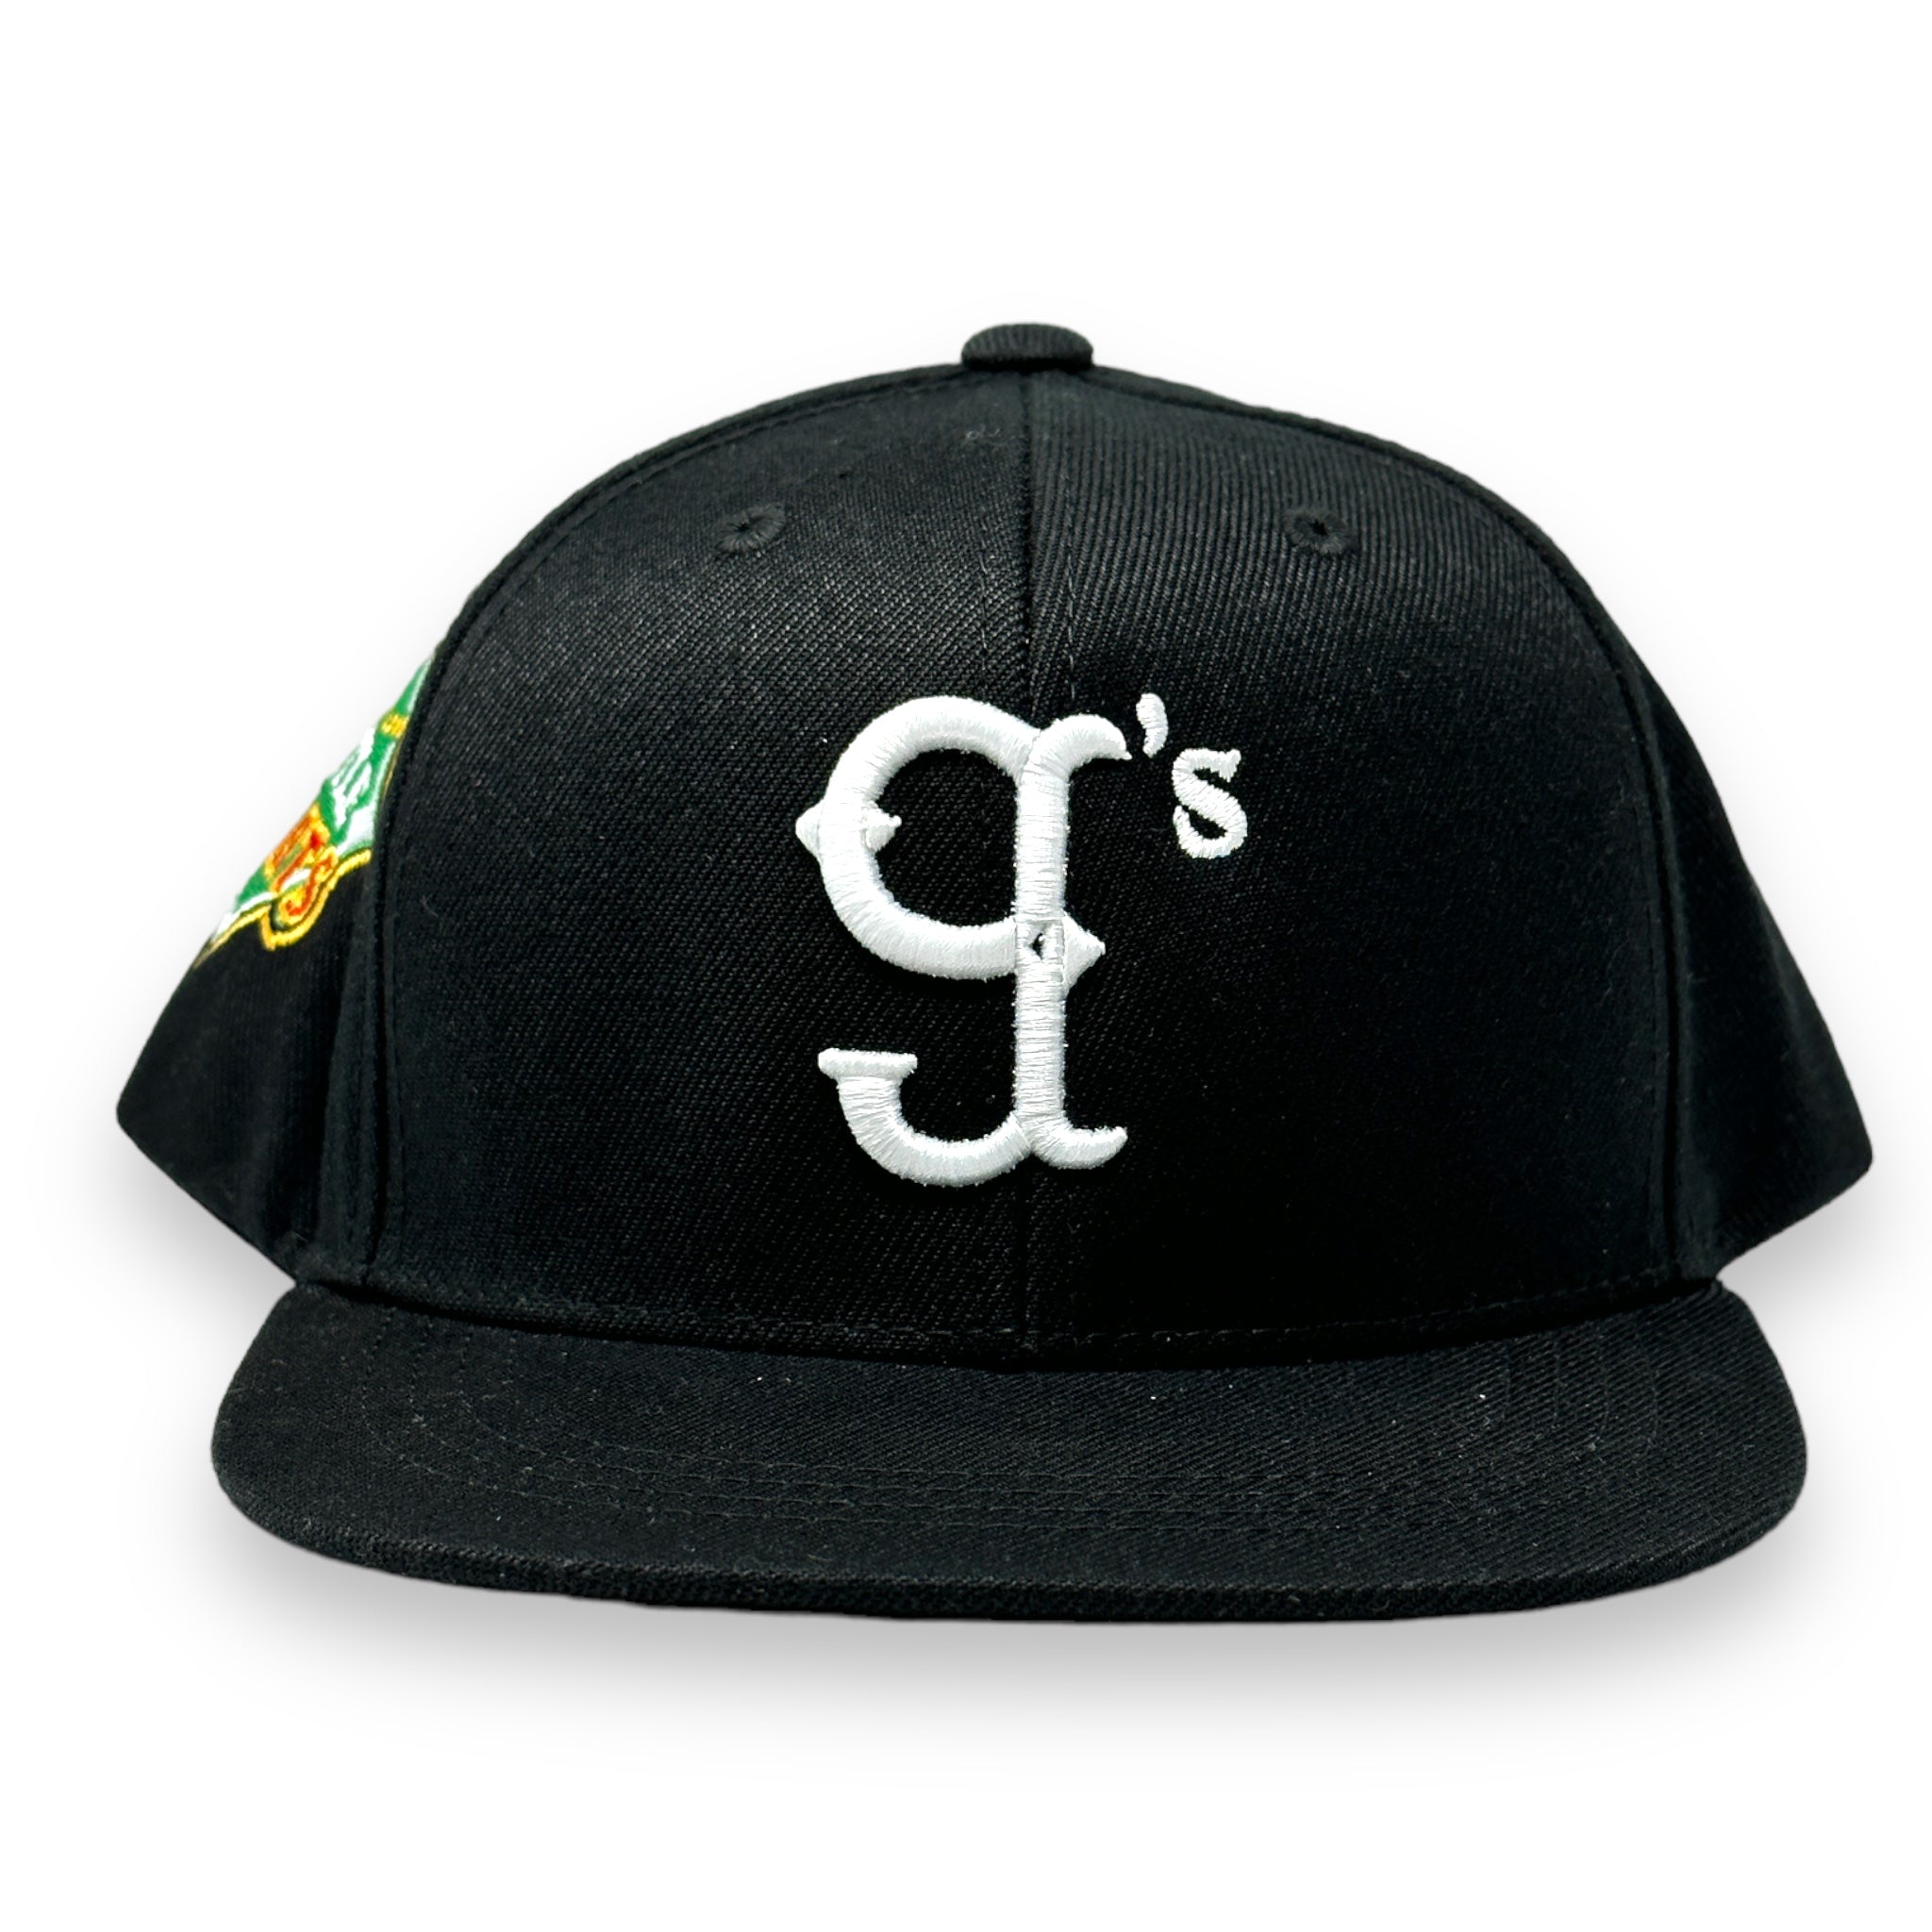 The Little g's Custom Snap Back Hat (Black)